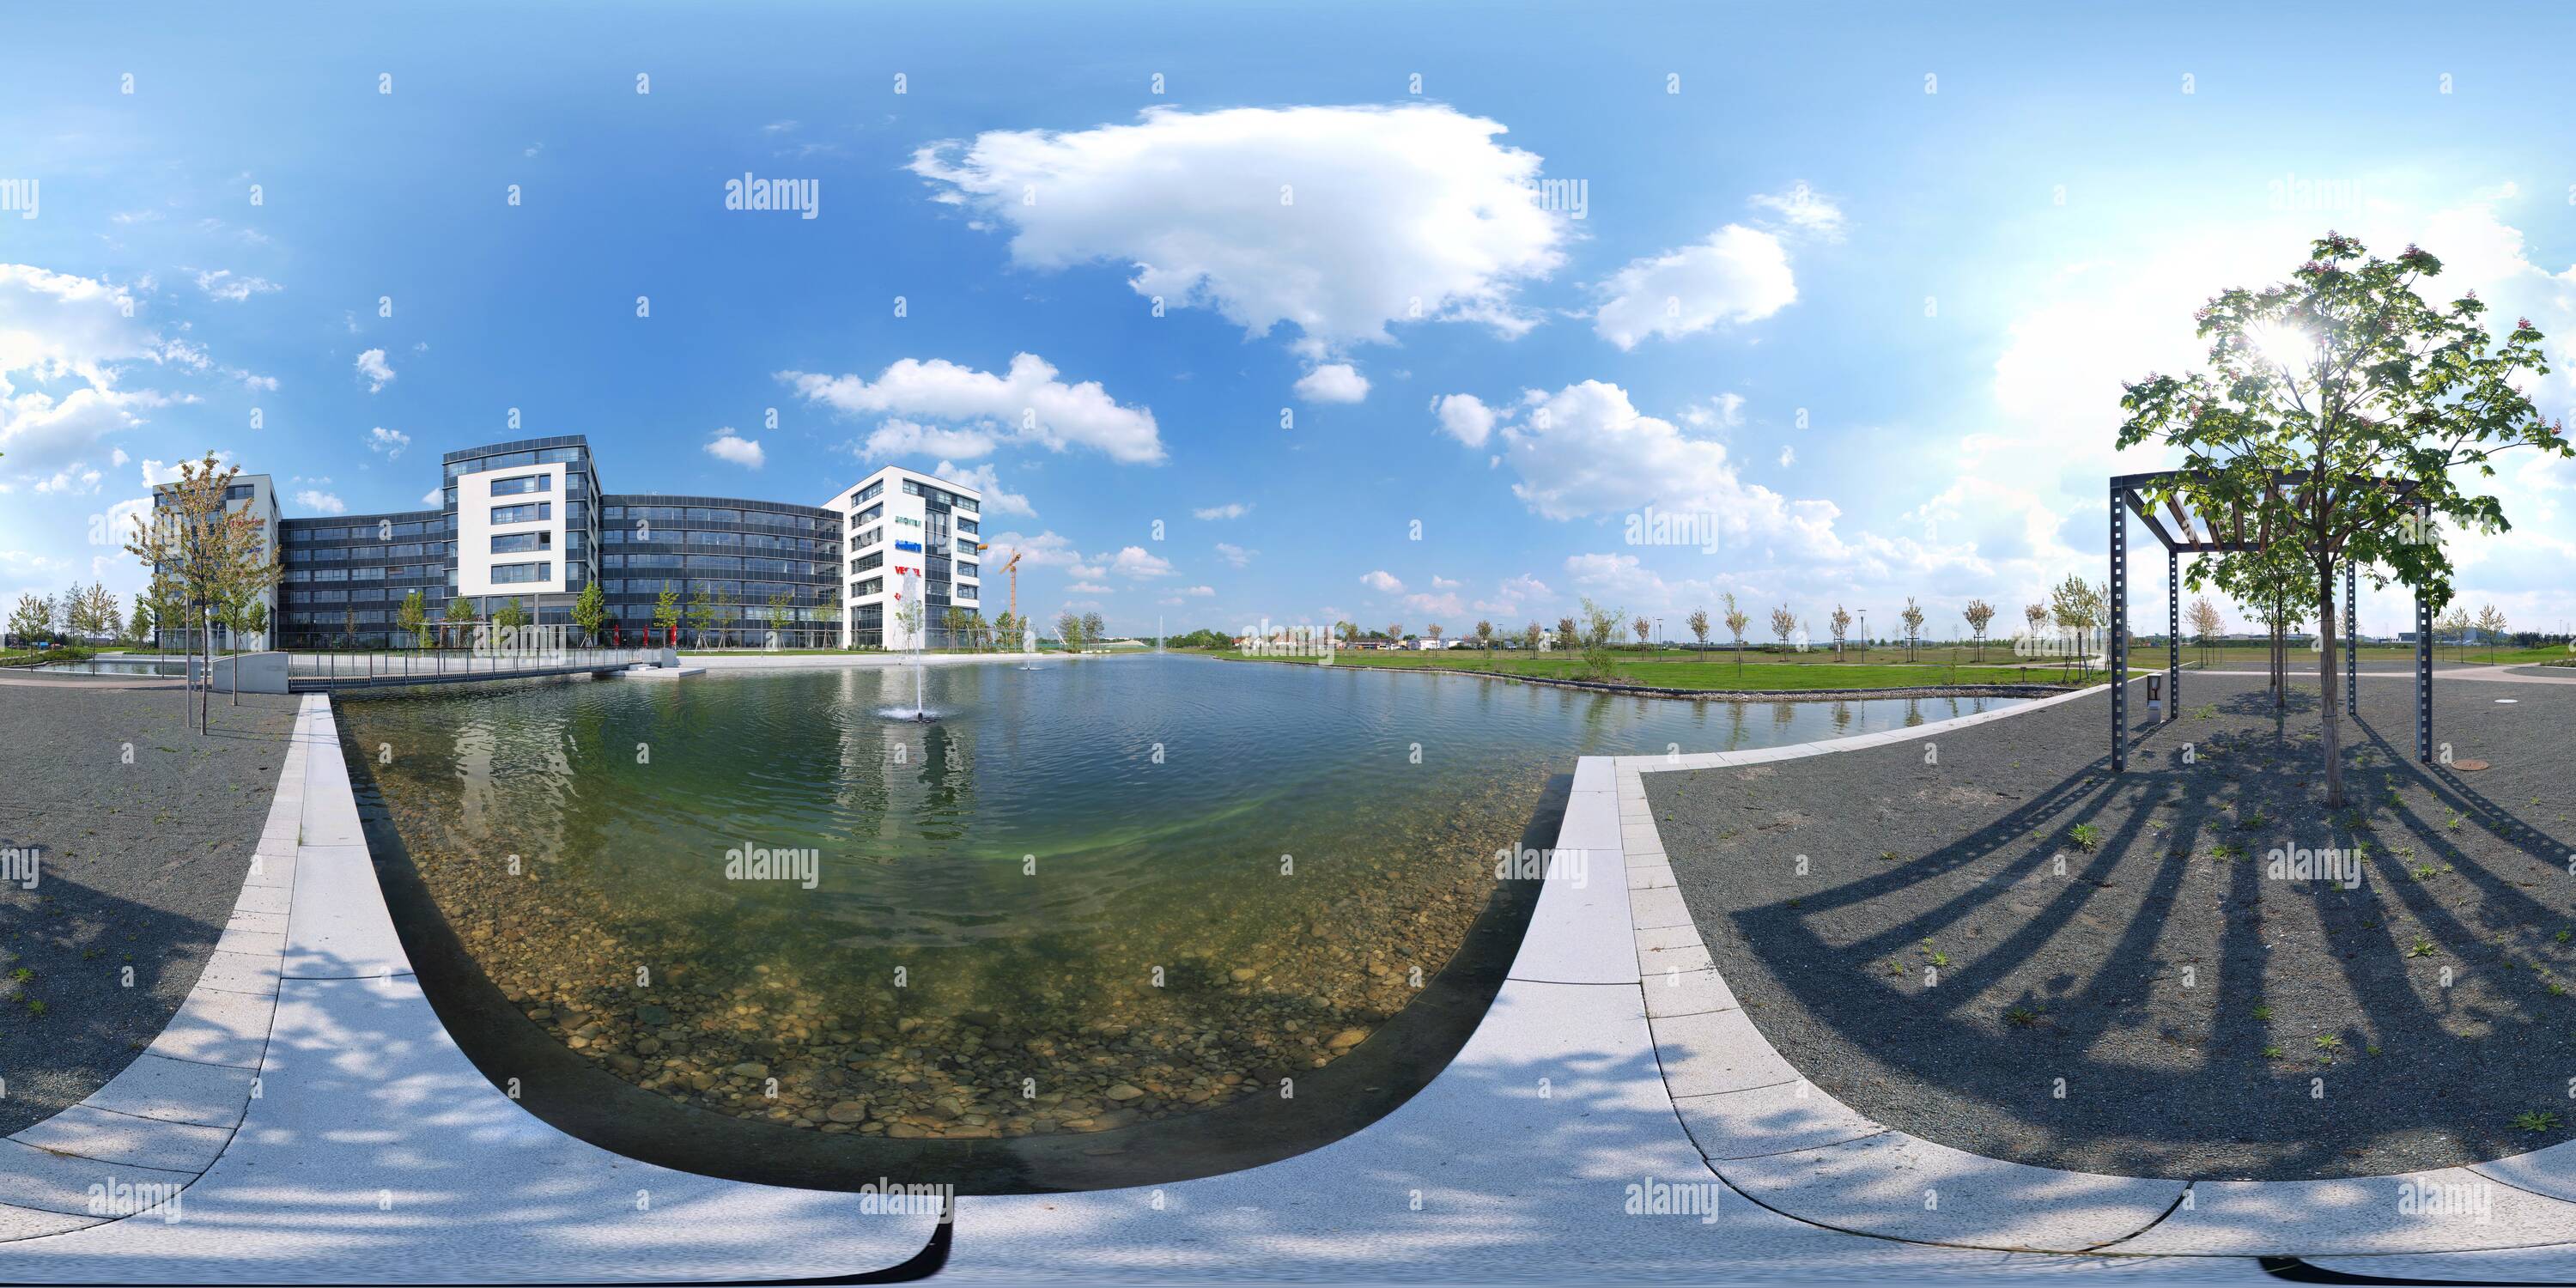 Vue panoramique à 360° de Business Campus Garching